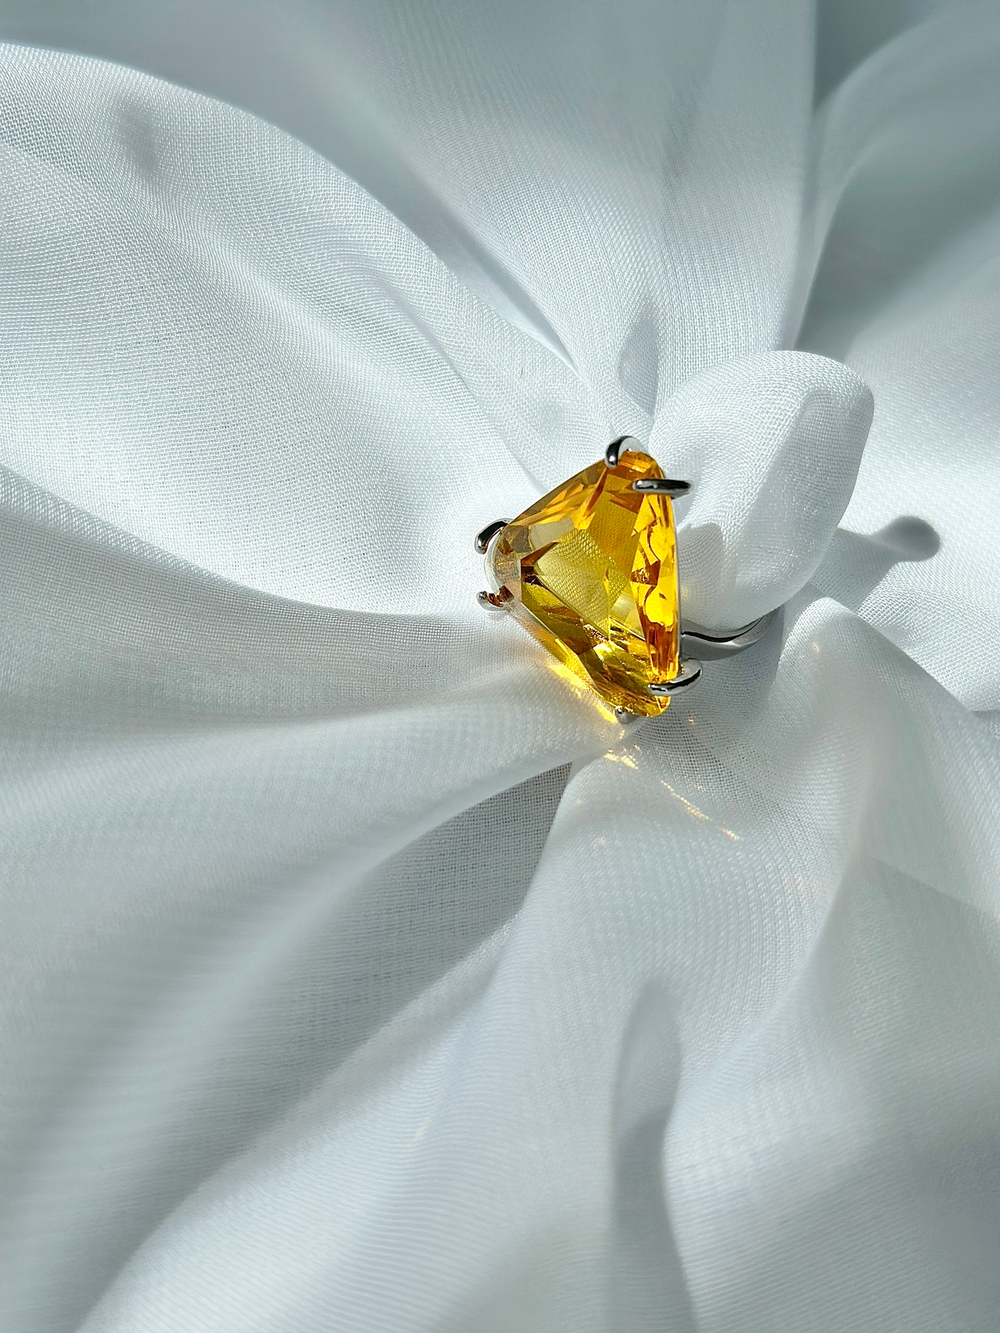 Кольцо треугольное из желтого кристалла, фурнитура серебро.